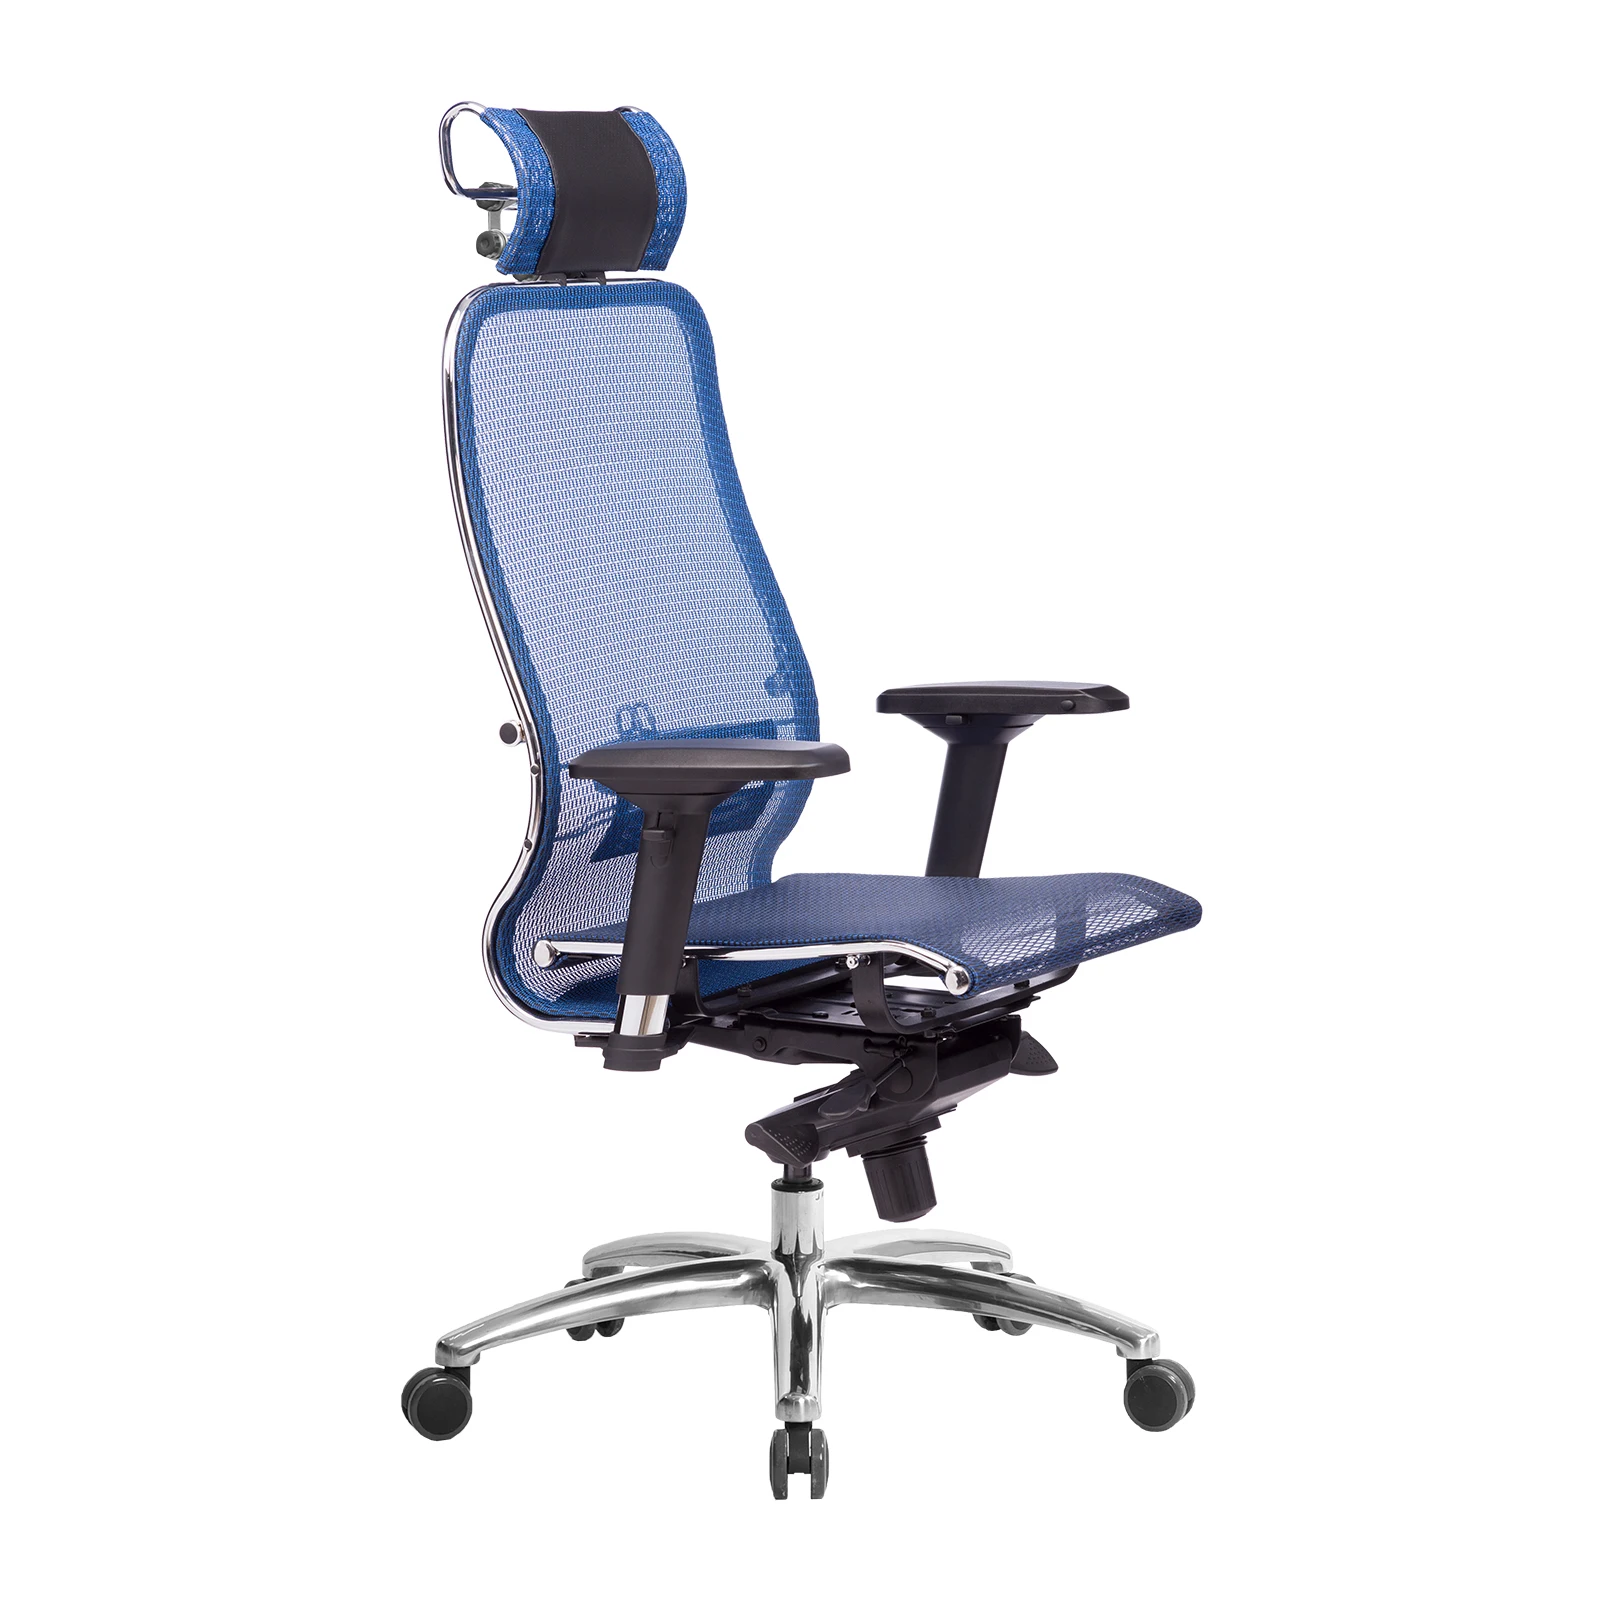 Кресло Метта SAMURAI S-3.04 Синий- офисное удобное кресло для компьютера. Находка